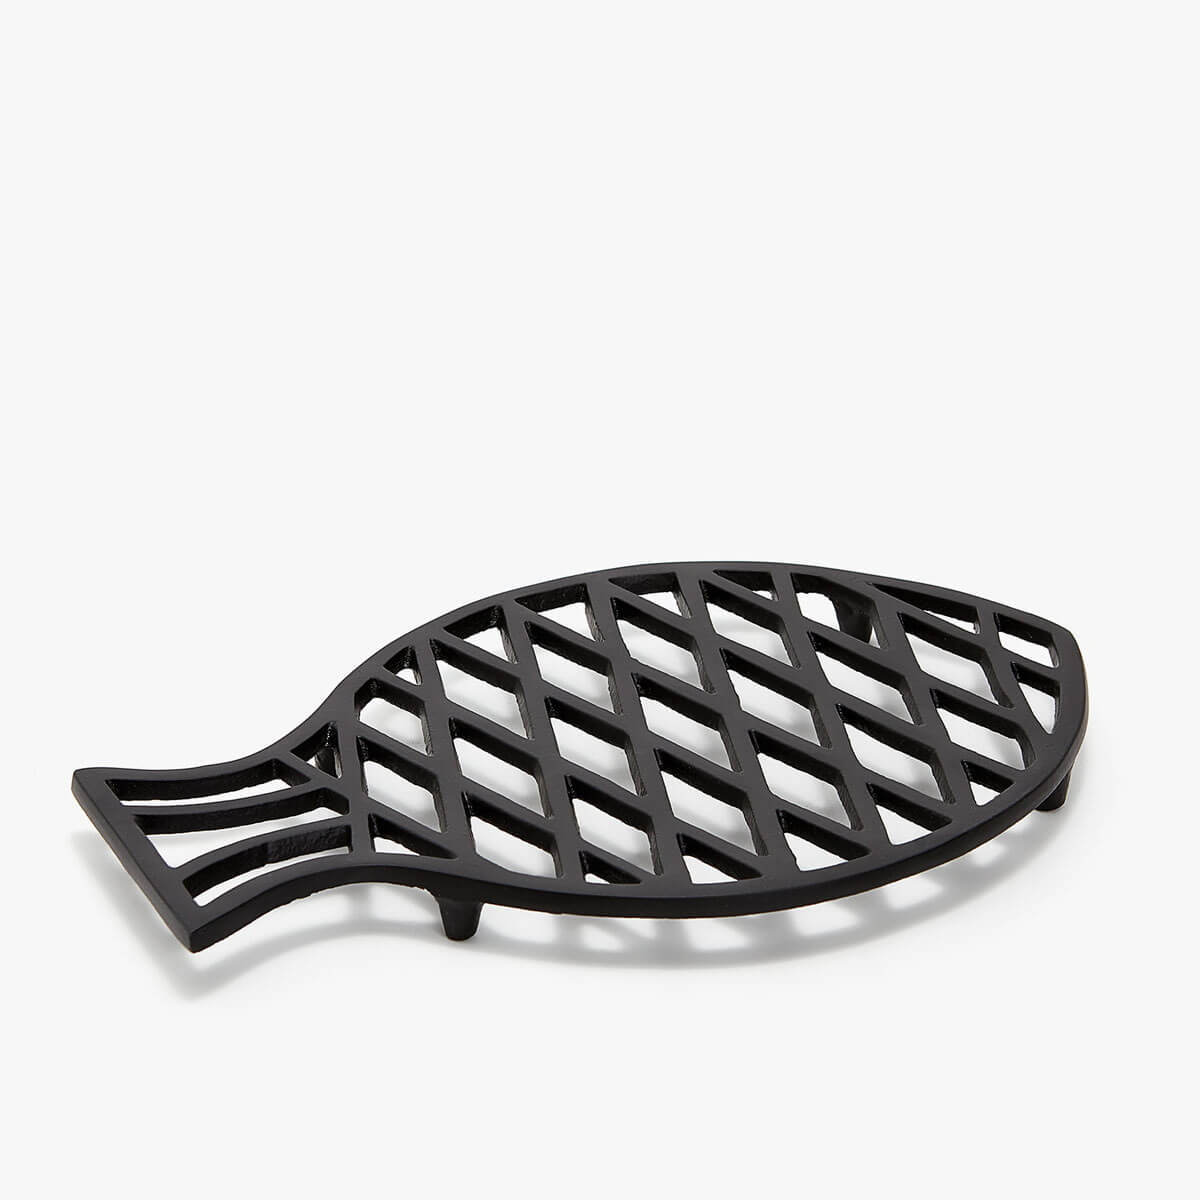 עזריאלי עיצוב שולחן קלאסי Zara Home מעמד לסירים חמים בצורת דג מחיר 99.90 שח צילום יחצ חול